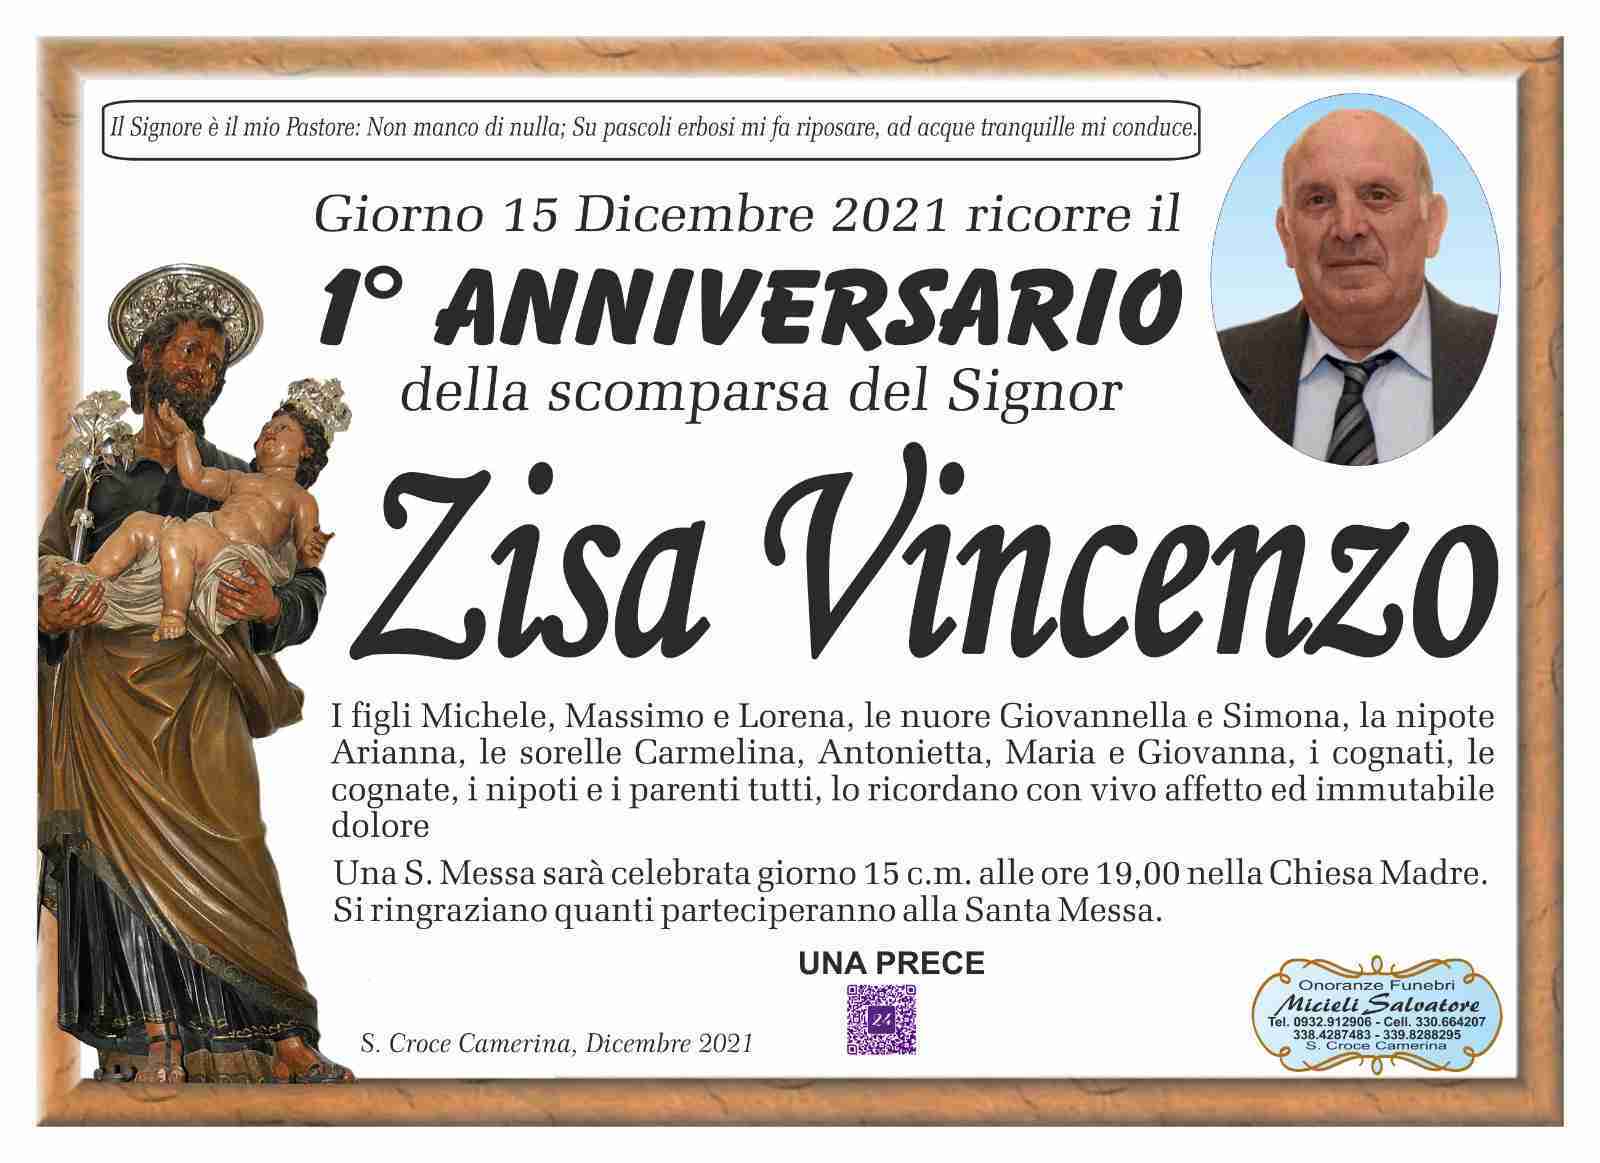 Vincenzo Zisa